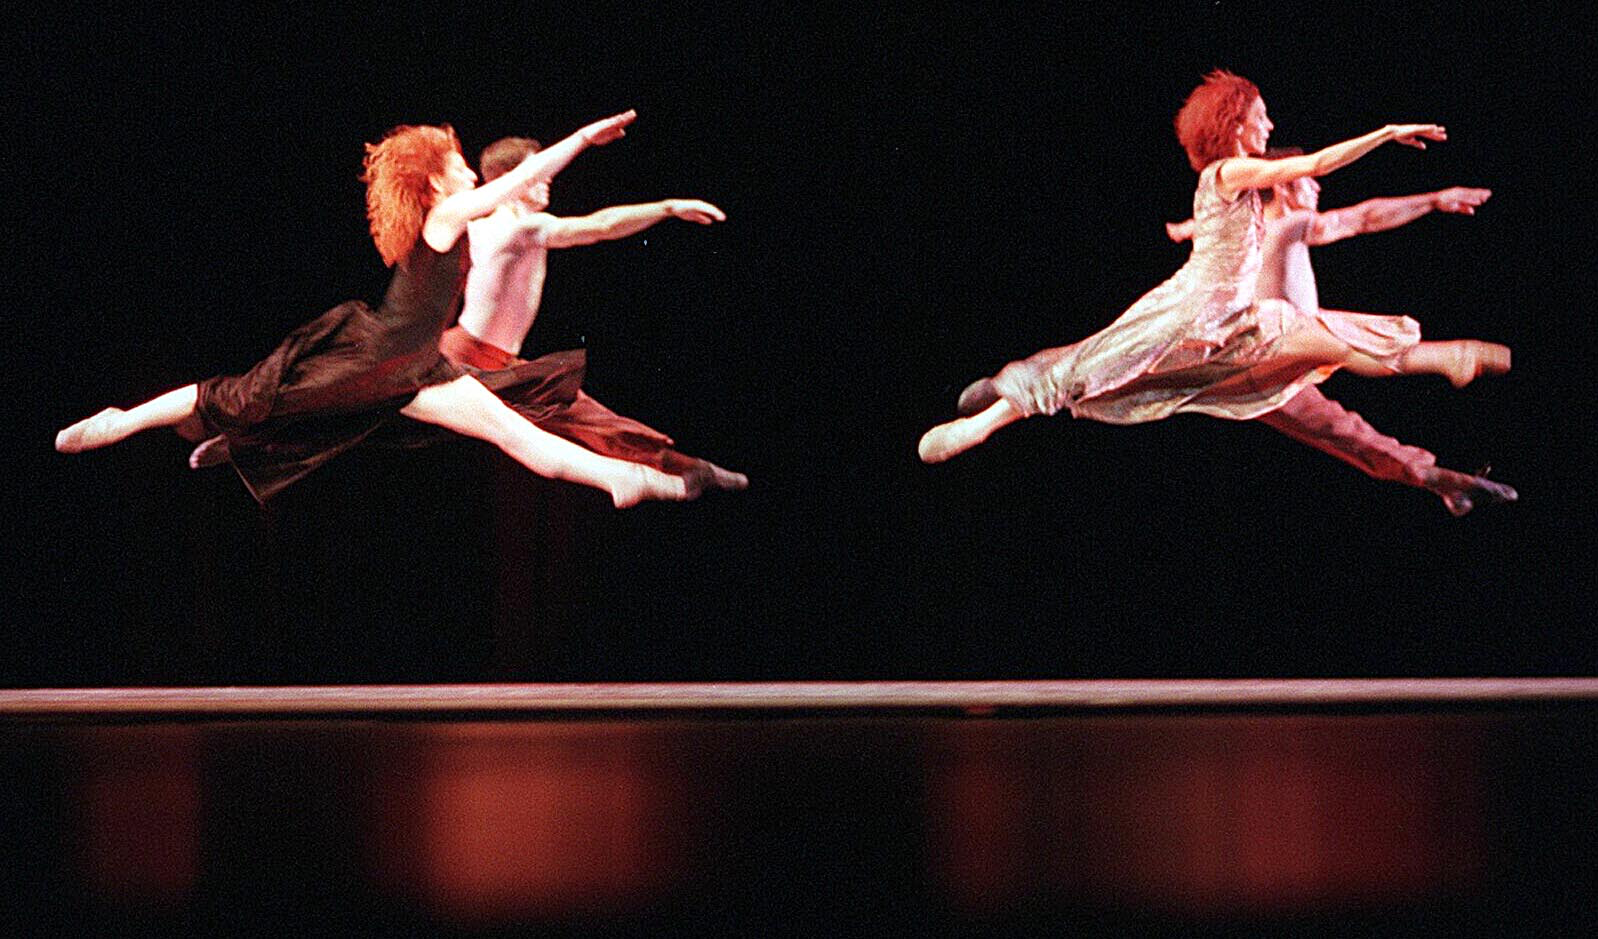 Tanzen im Festspielhaus.
Ballett